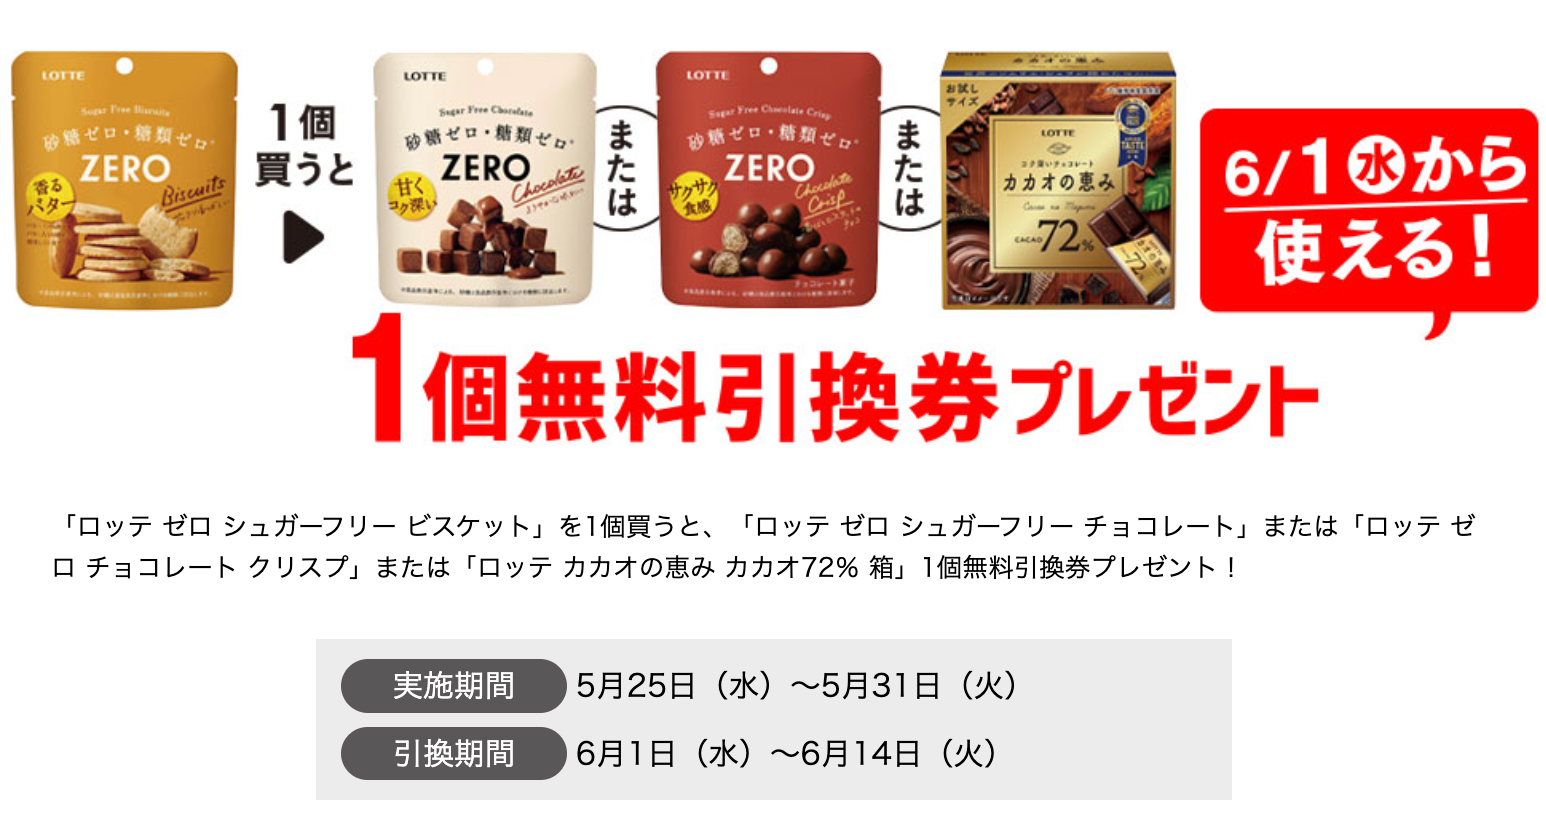 セブンイレブン】チョコレートの無料券がもらえる！お得なキャンペーンが追加で開催 - ペイさん | Yahoo! JAPAN クリエイターズプログラム